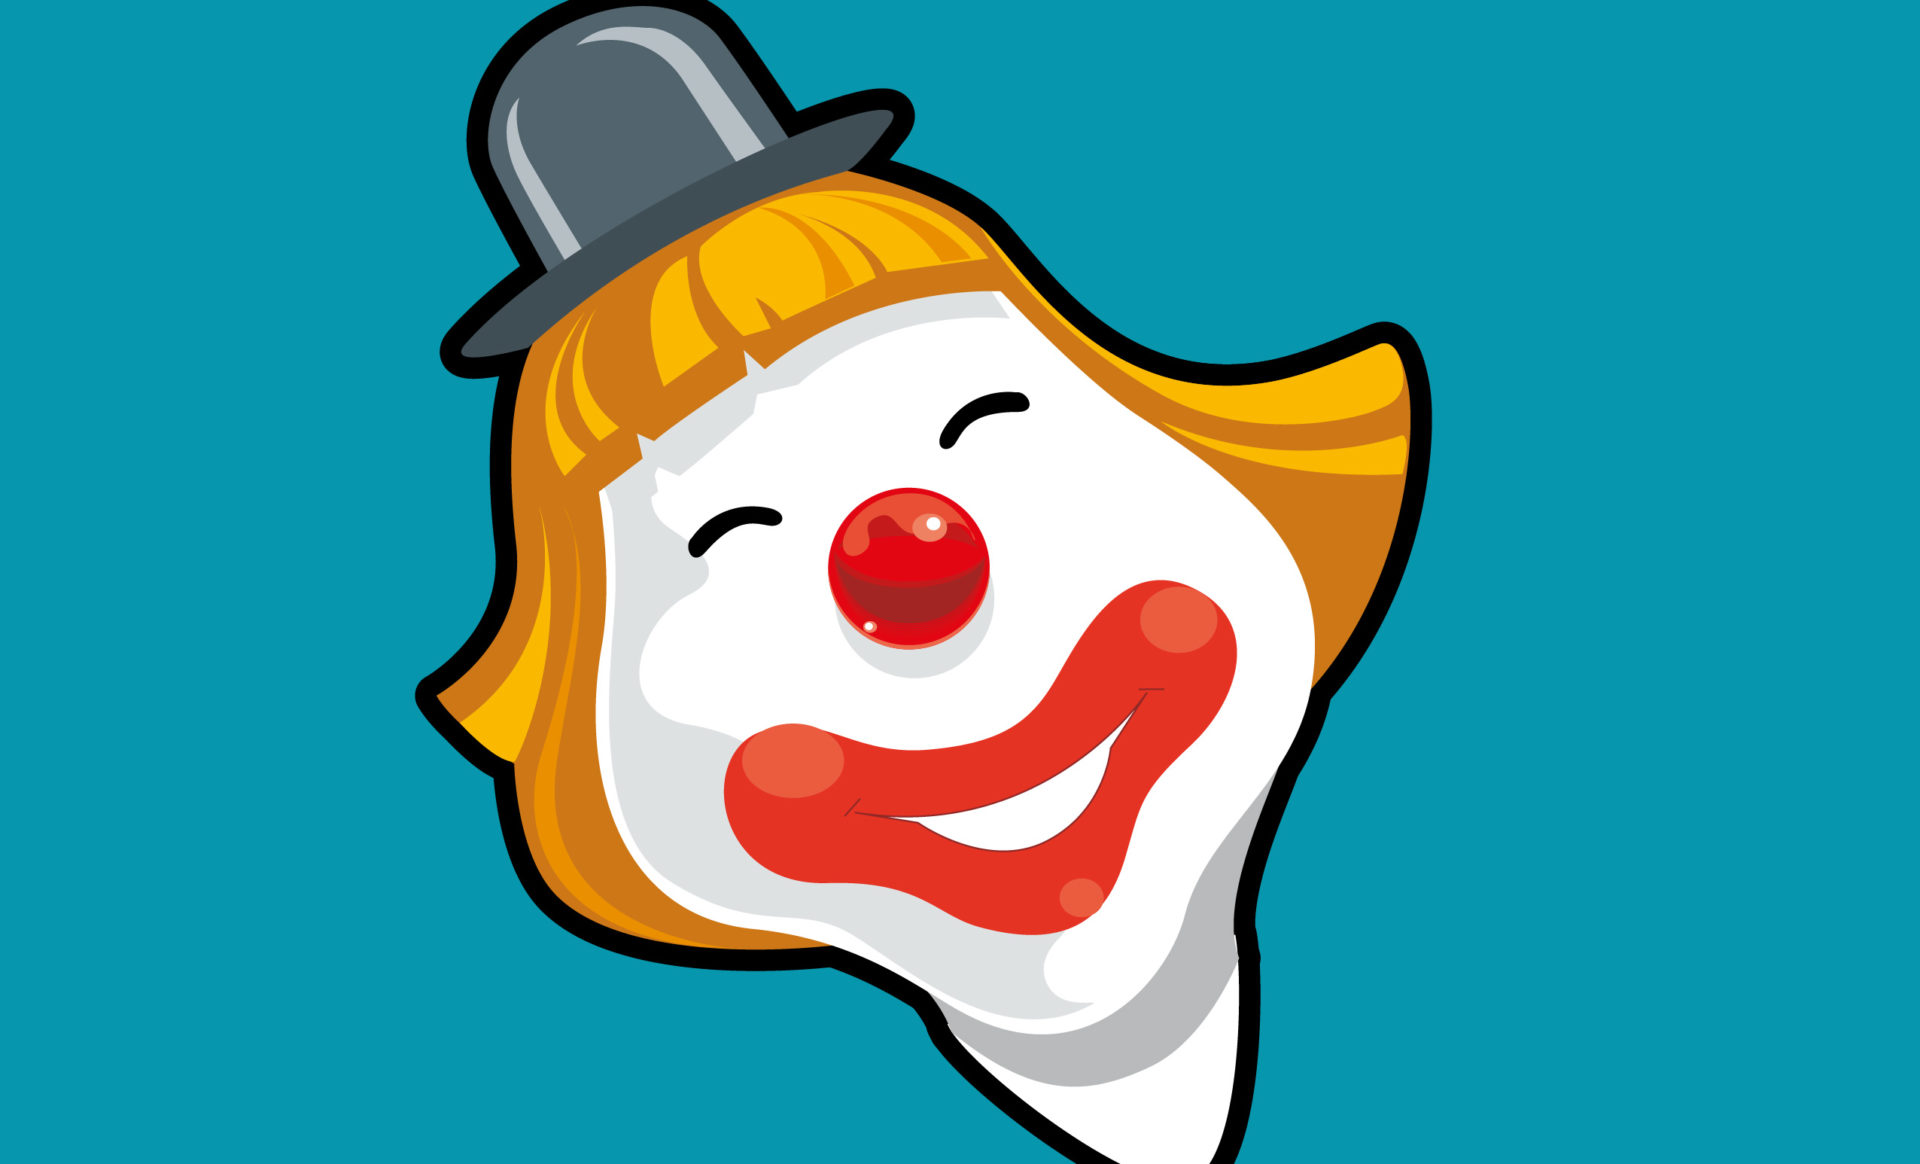 Studio Personaggio Clown | Studiovagnetti